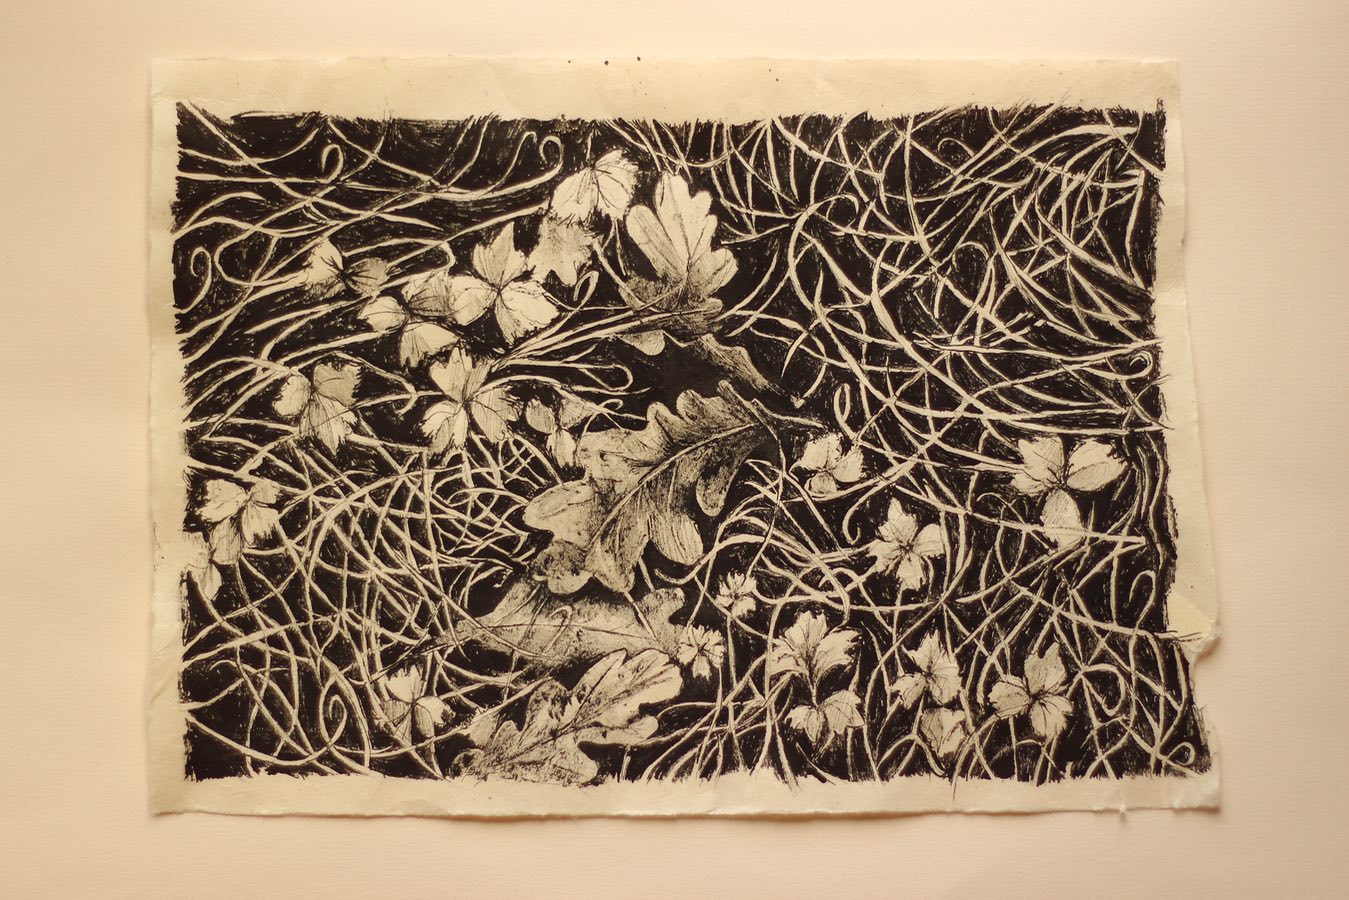  ‘Garden, Leaf Accumulation', Indian ink on Lokta paper, 35x24cm, 2021